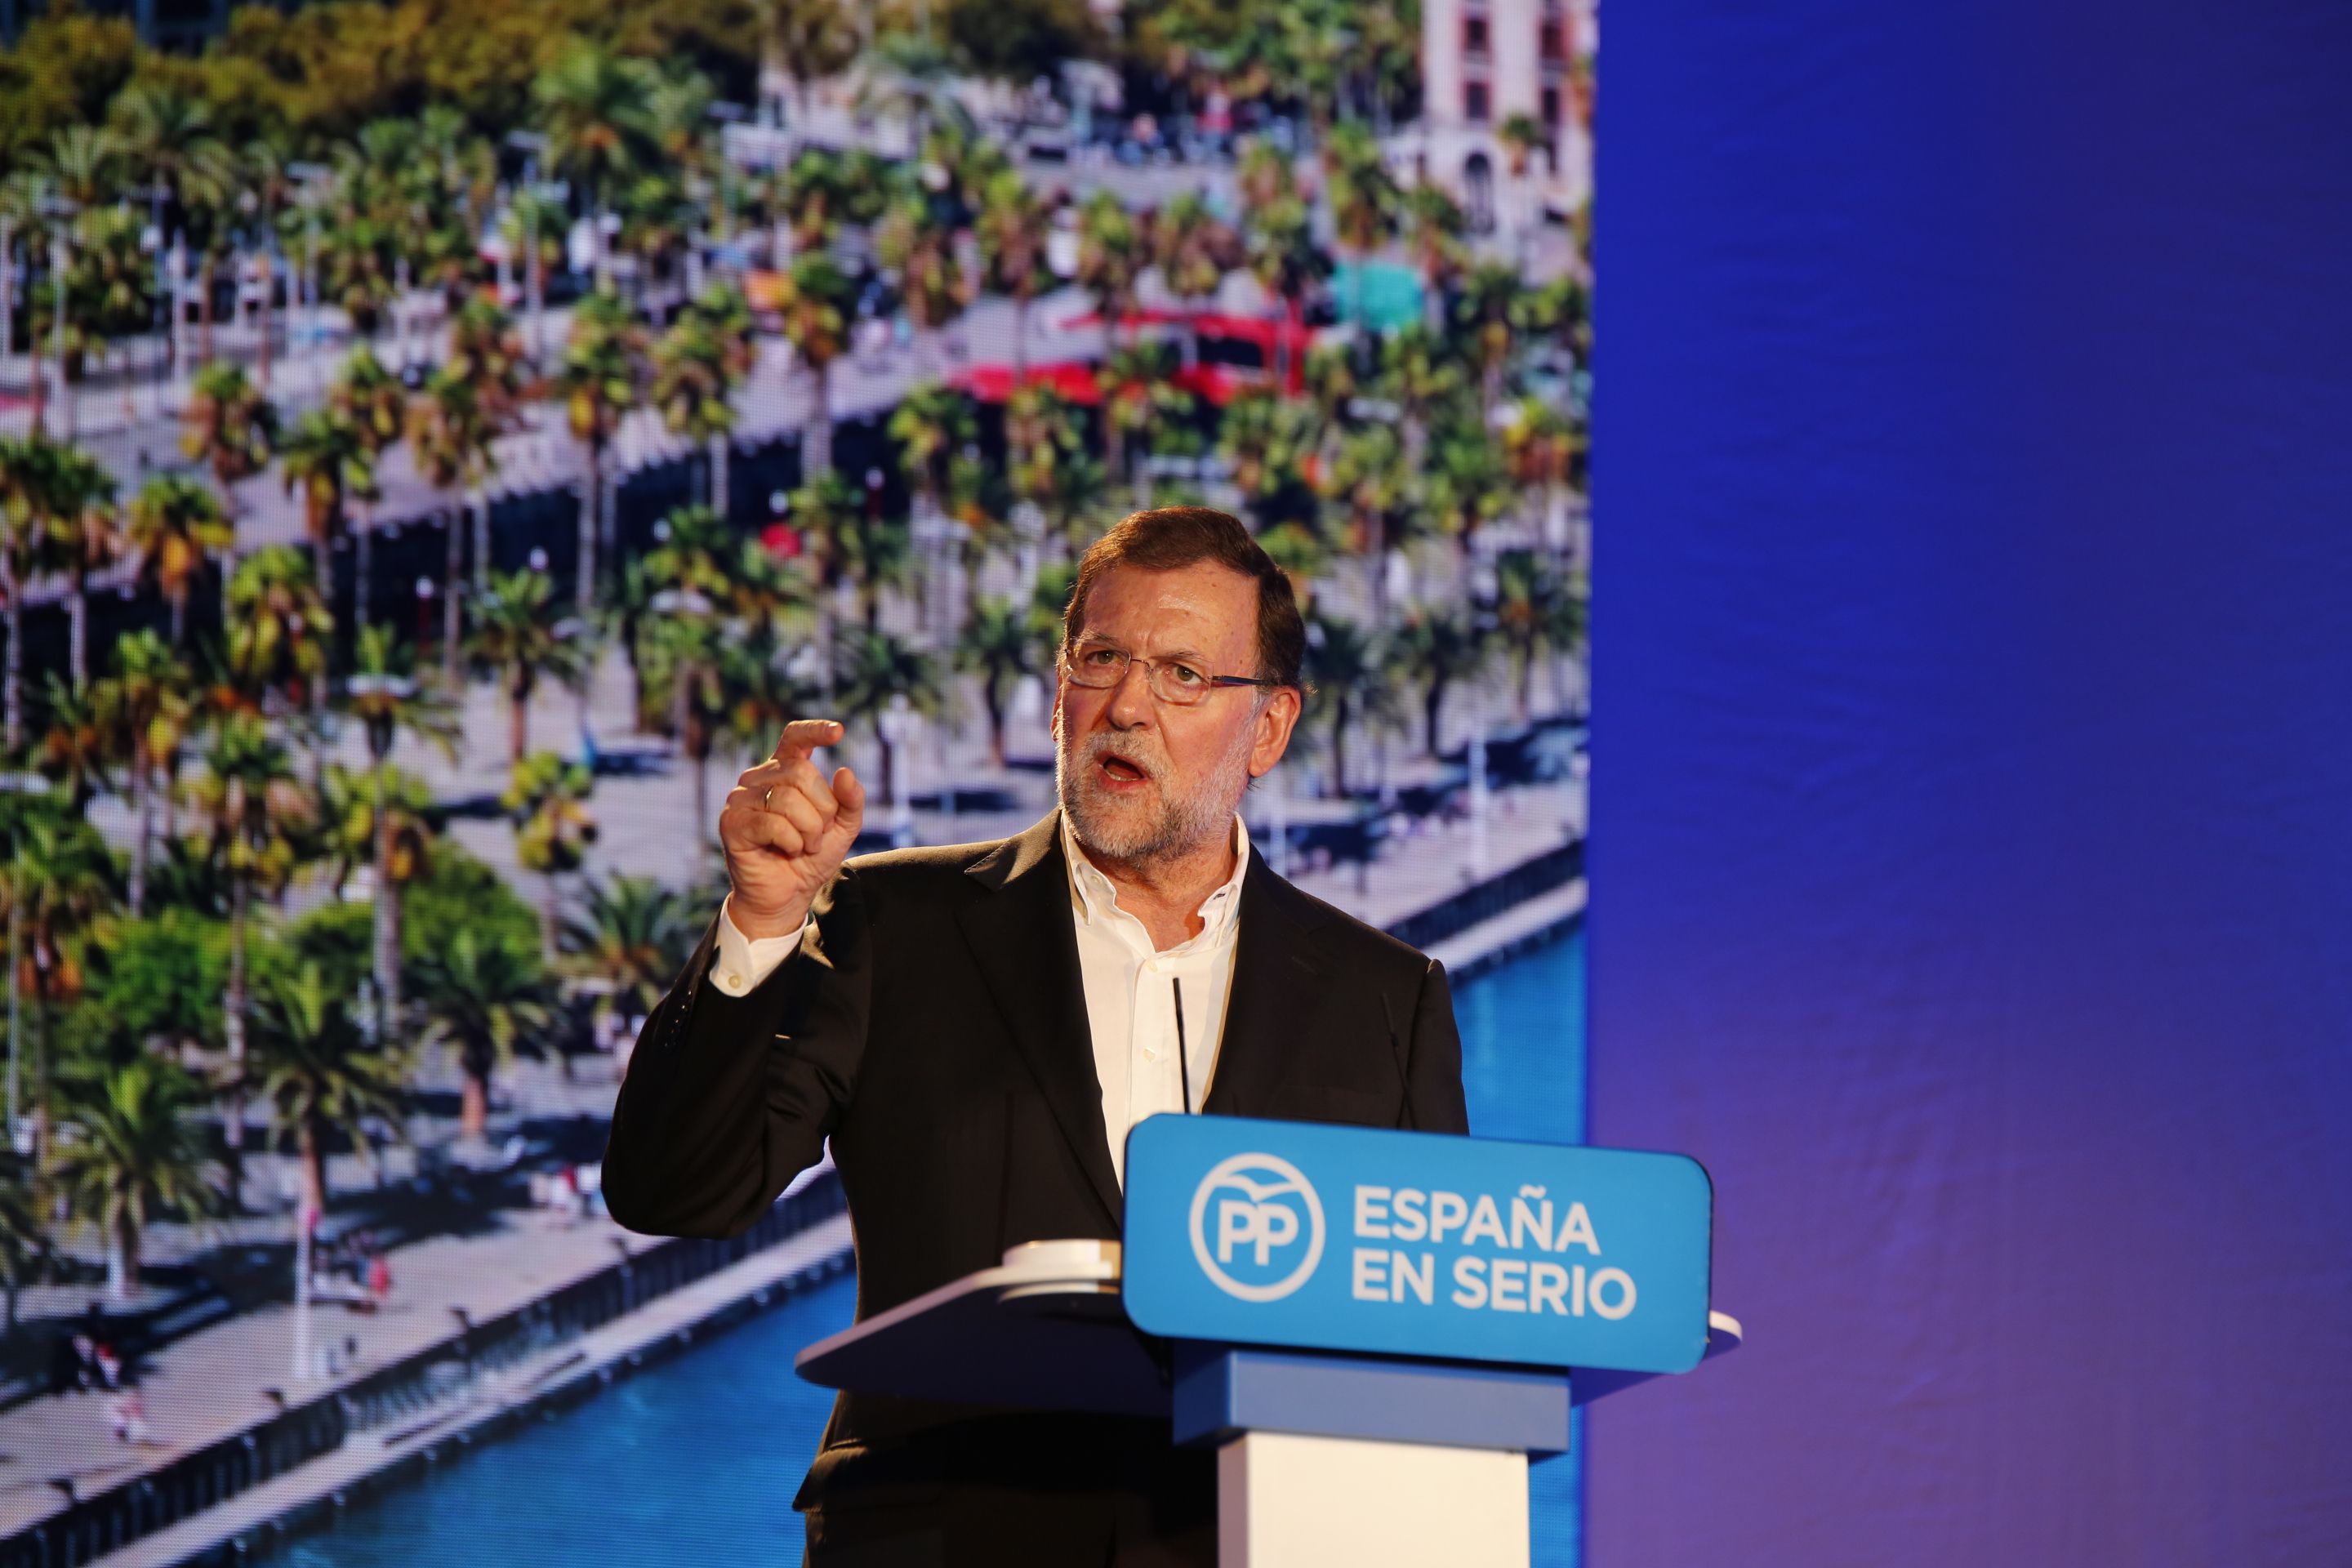 Rajoy canvia l’agenda i assisteix a l’homenatge a Germanwings al Prat